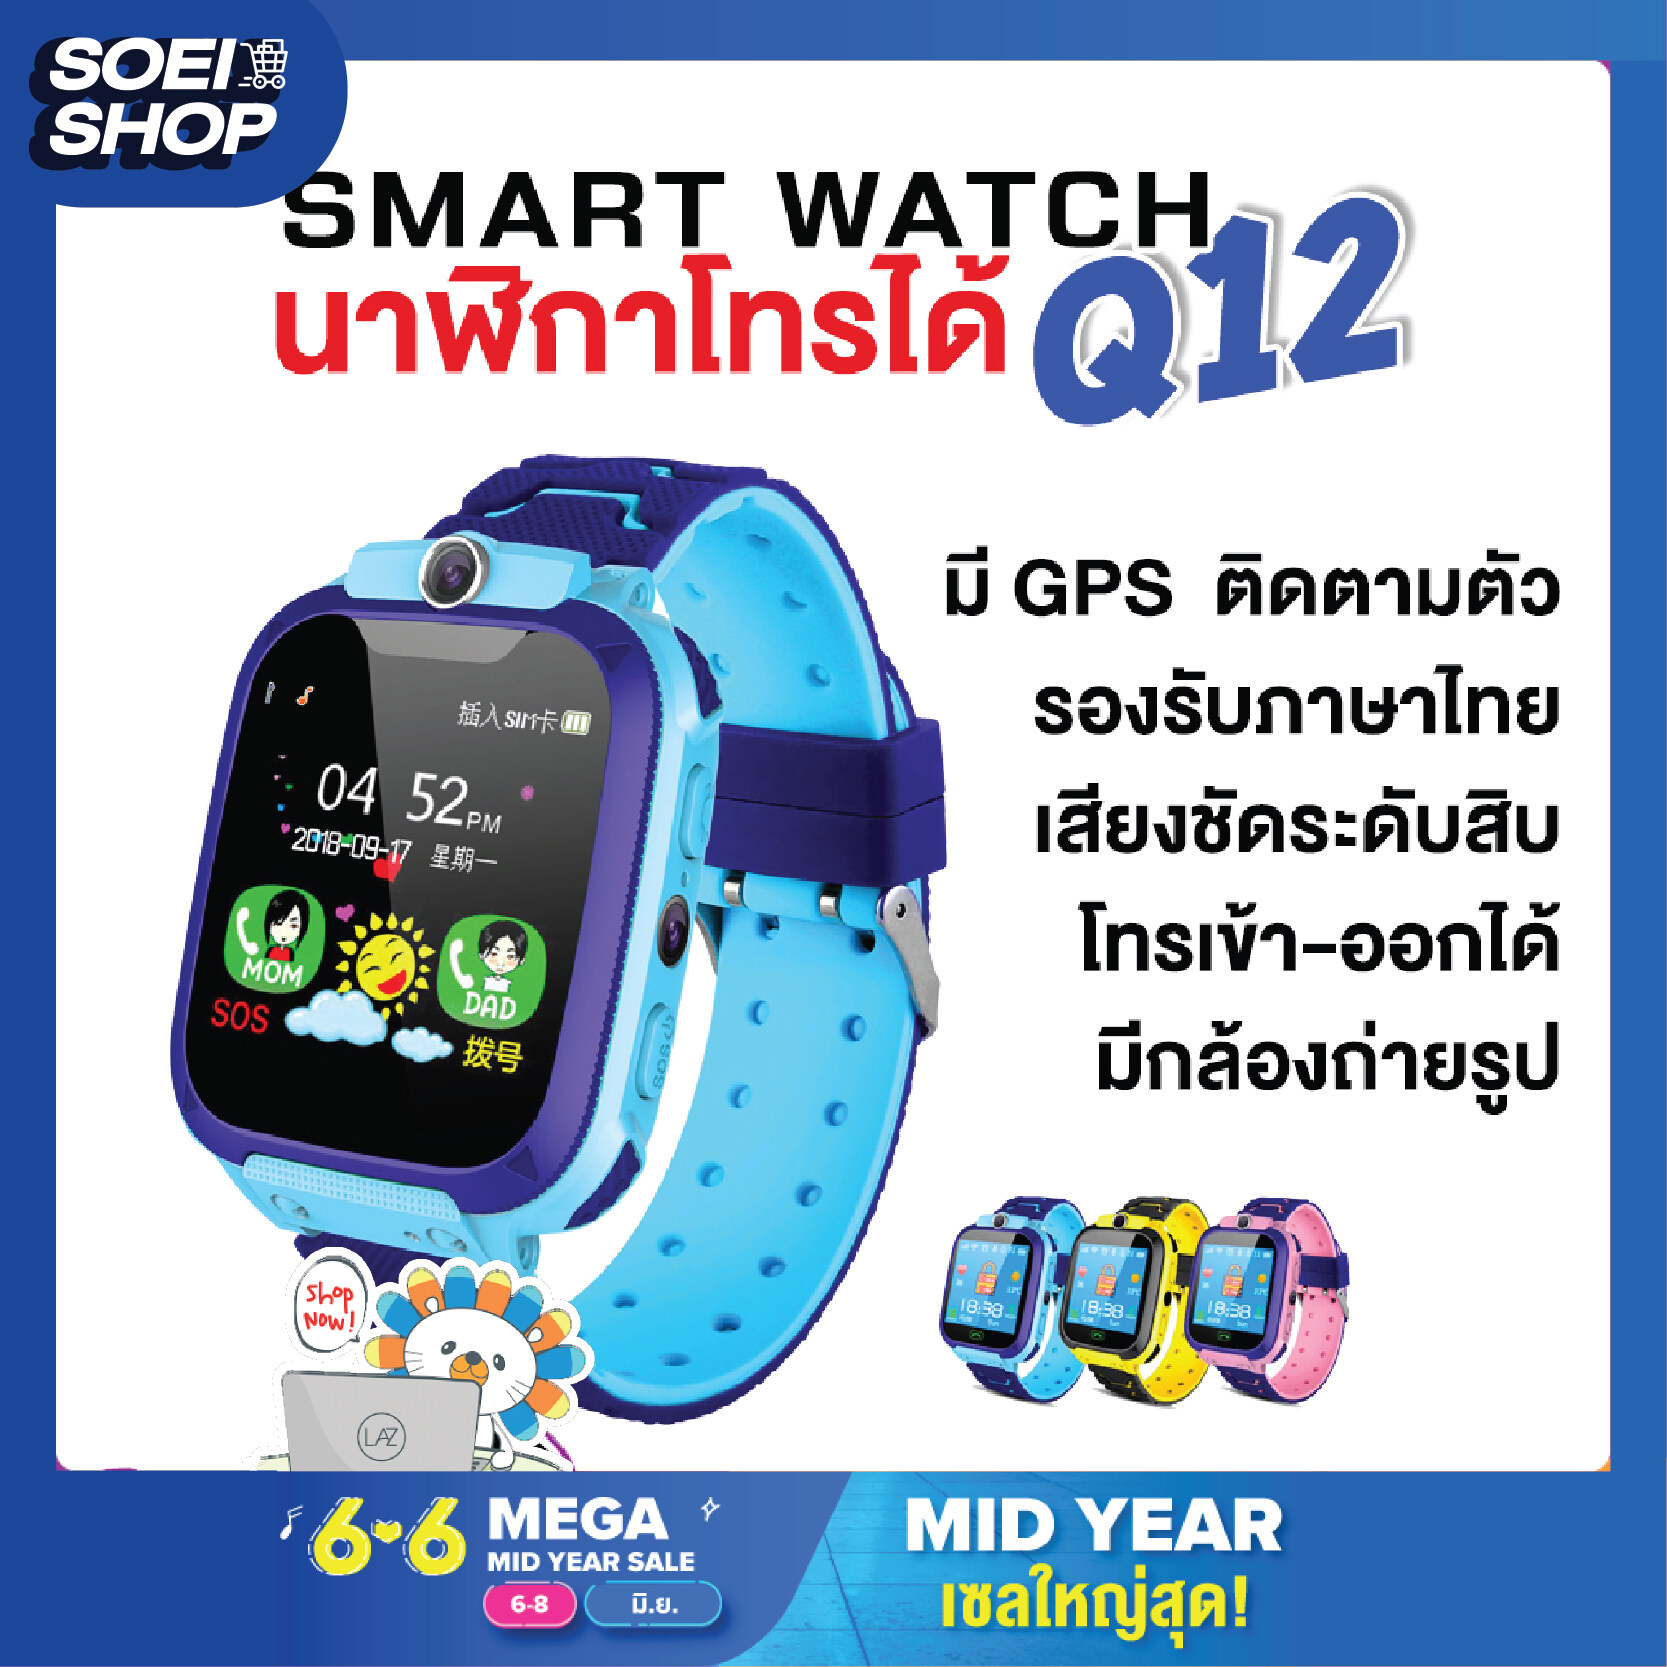 Smart Watch Q12 สมาร์ทวอท นาฬิกาอัพเกรด นาฬิกาเด็ก ยกหน้าจอได้ อัพเกรด มีทั้ง กล้องหน้า กล้องหลัง ไอโม่ สมาร์ทวอทช์ นาฬิกาอัจฉริยะ มี GPS ติดตามตำแหน่ง ใส่ซิมได้ Q12B โทรเข้า-ออกได้ รองรับภาษาไทย มีเก็บเงินปลายทาง